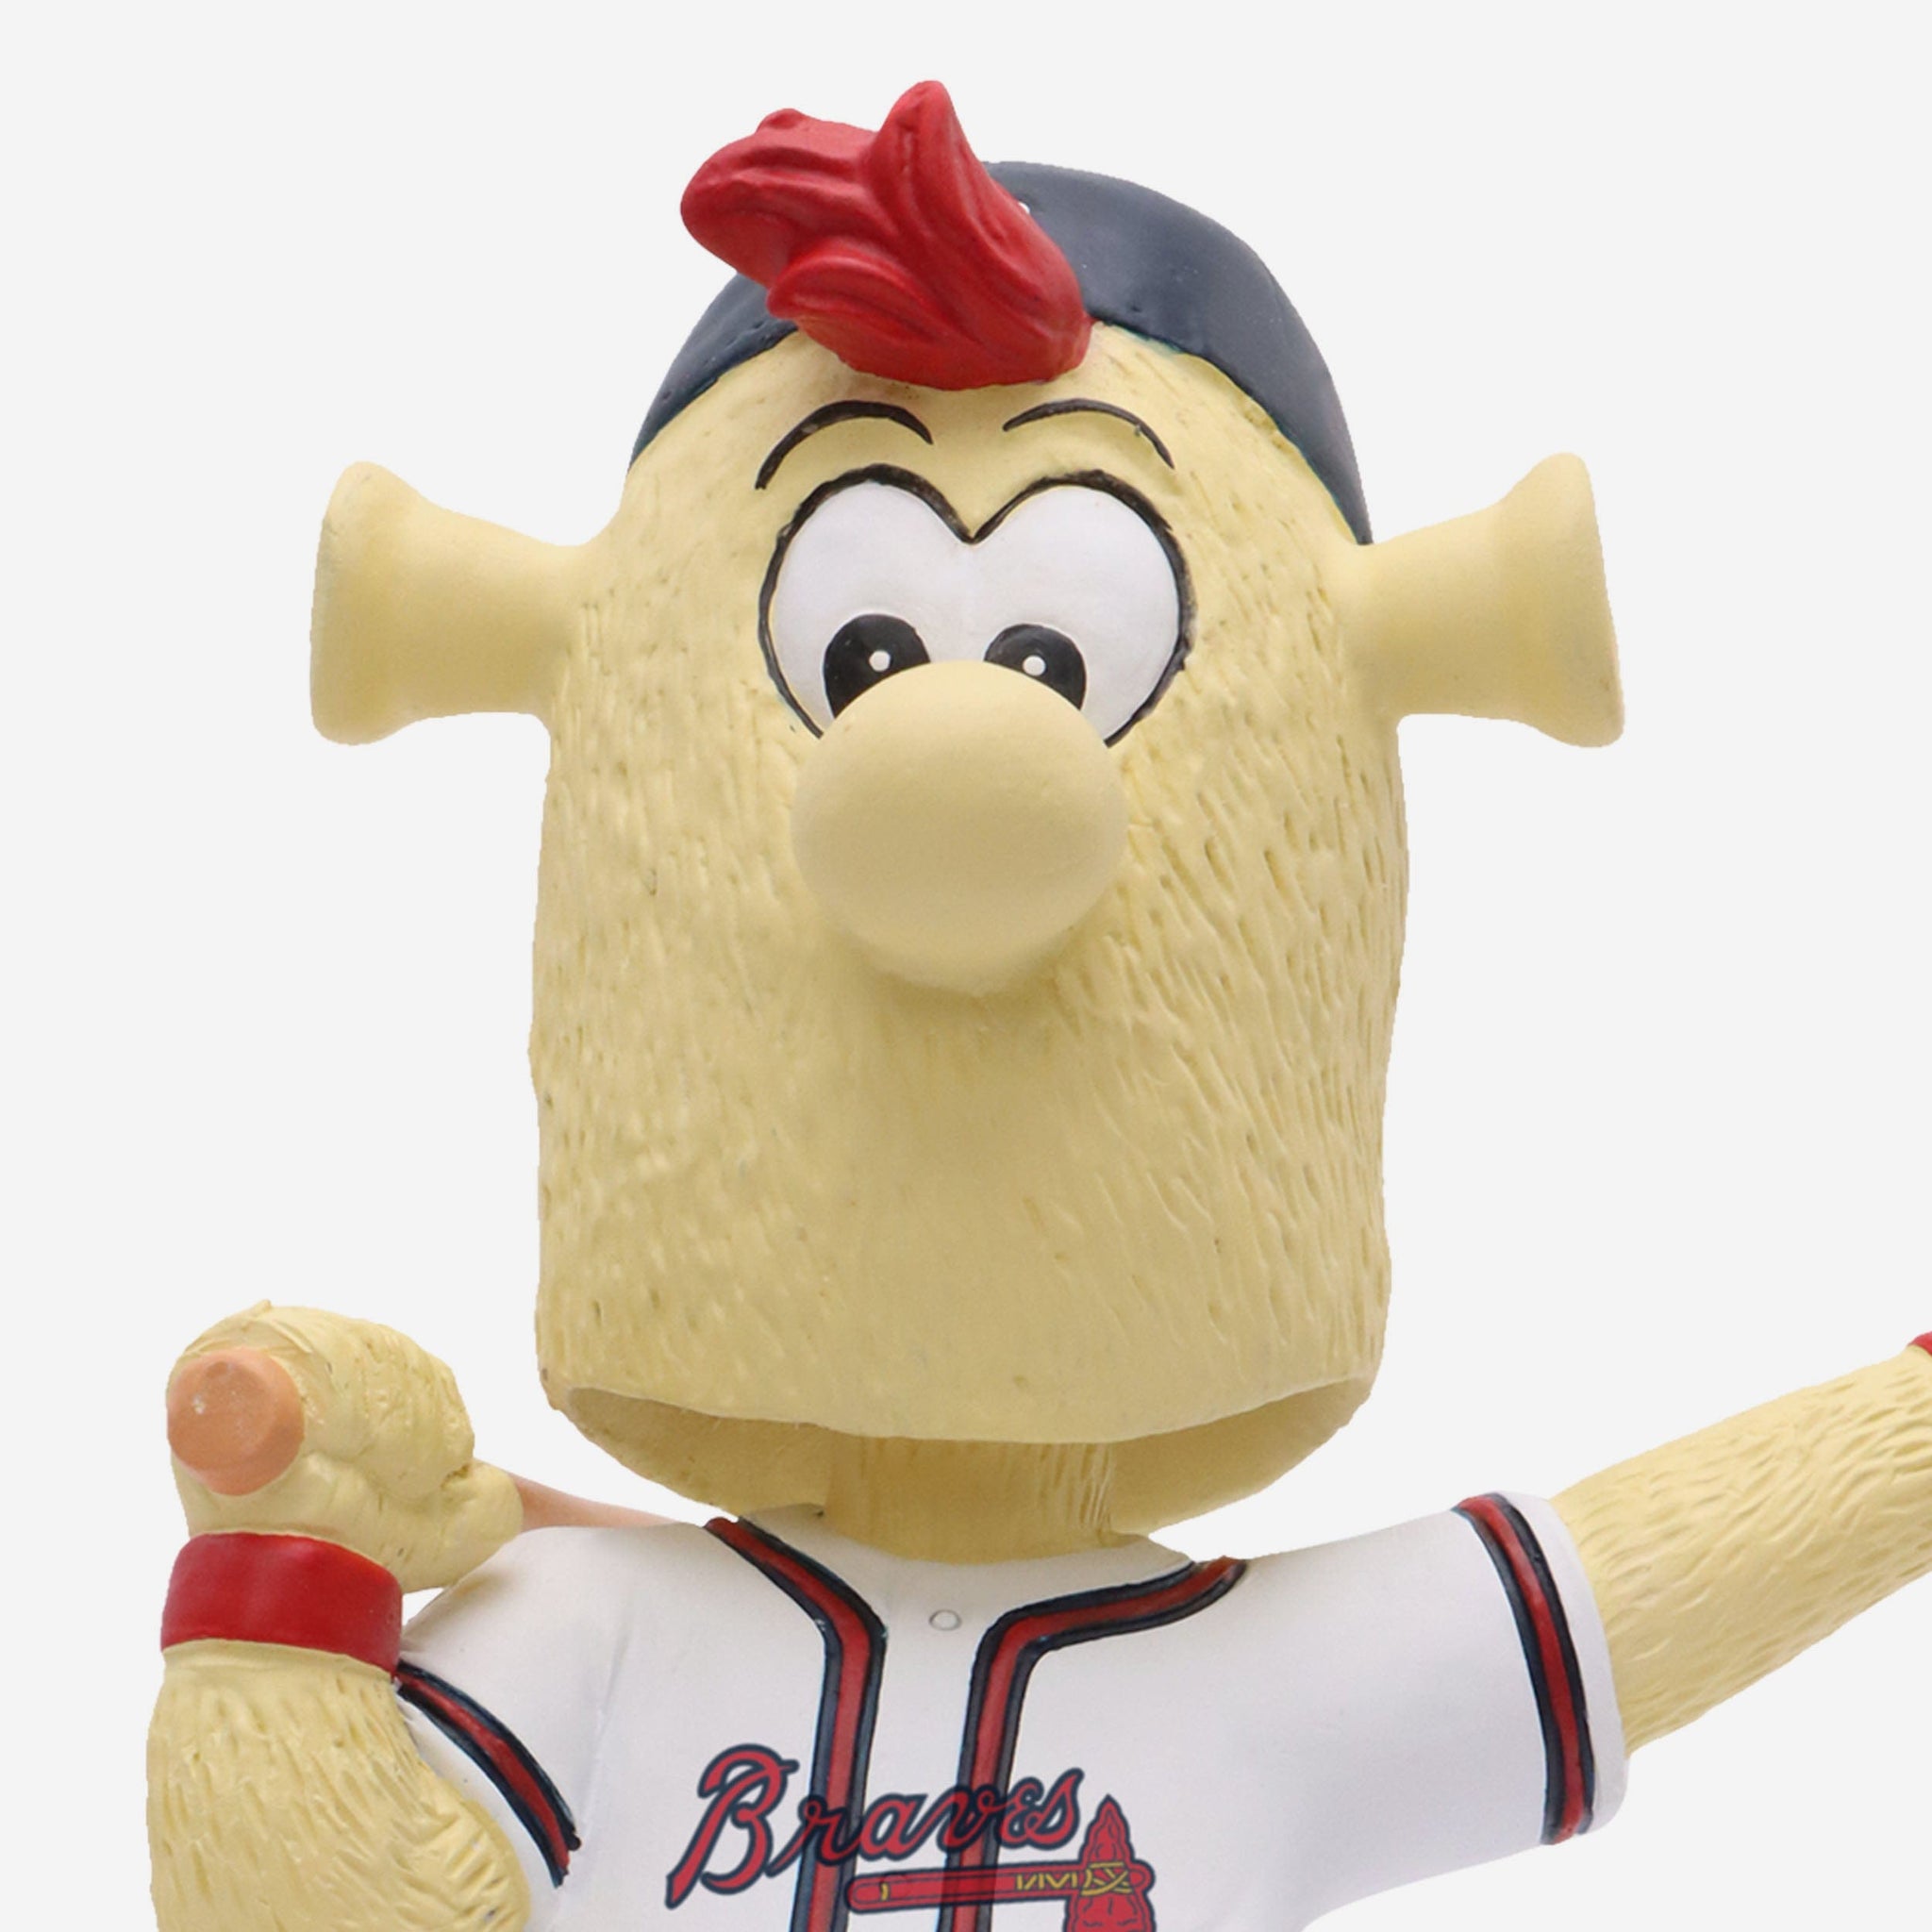 Atlanta Braves MLB Blooper Mascot Ornament